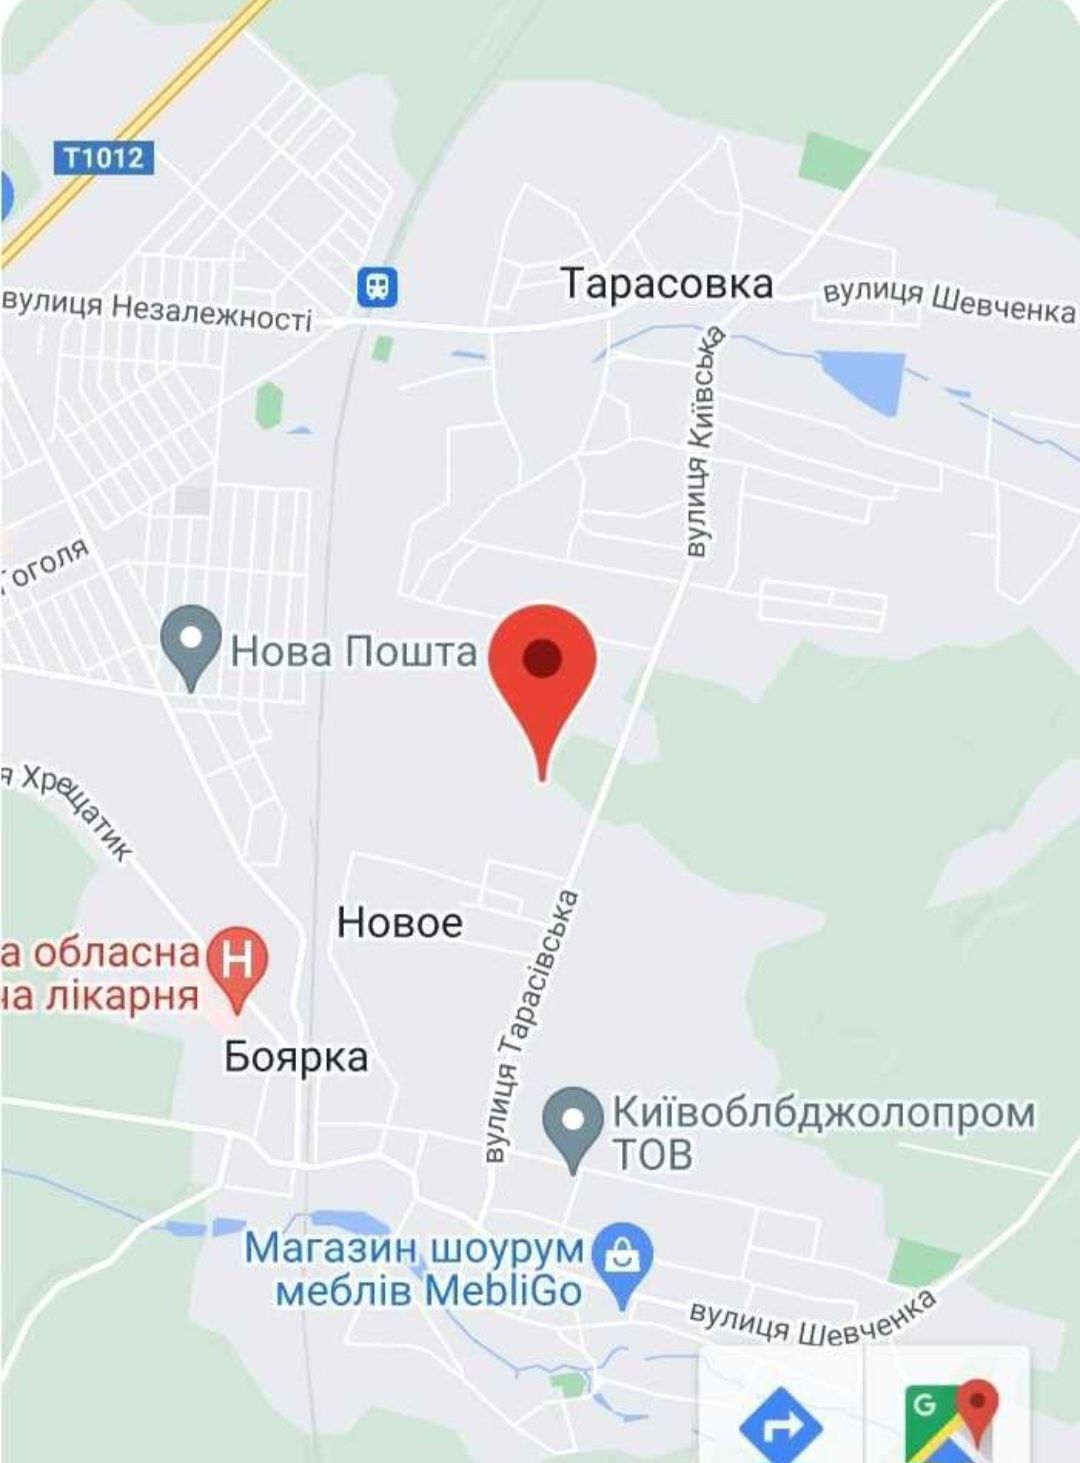 БЕЗ % ПРОДАМ 2-х рівневу квартиру з ремонтом Боярка/Нове/Тарасівка